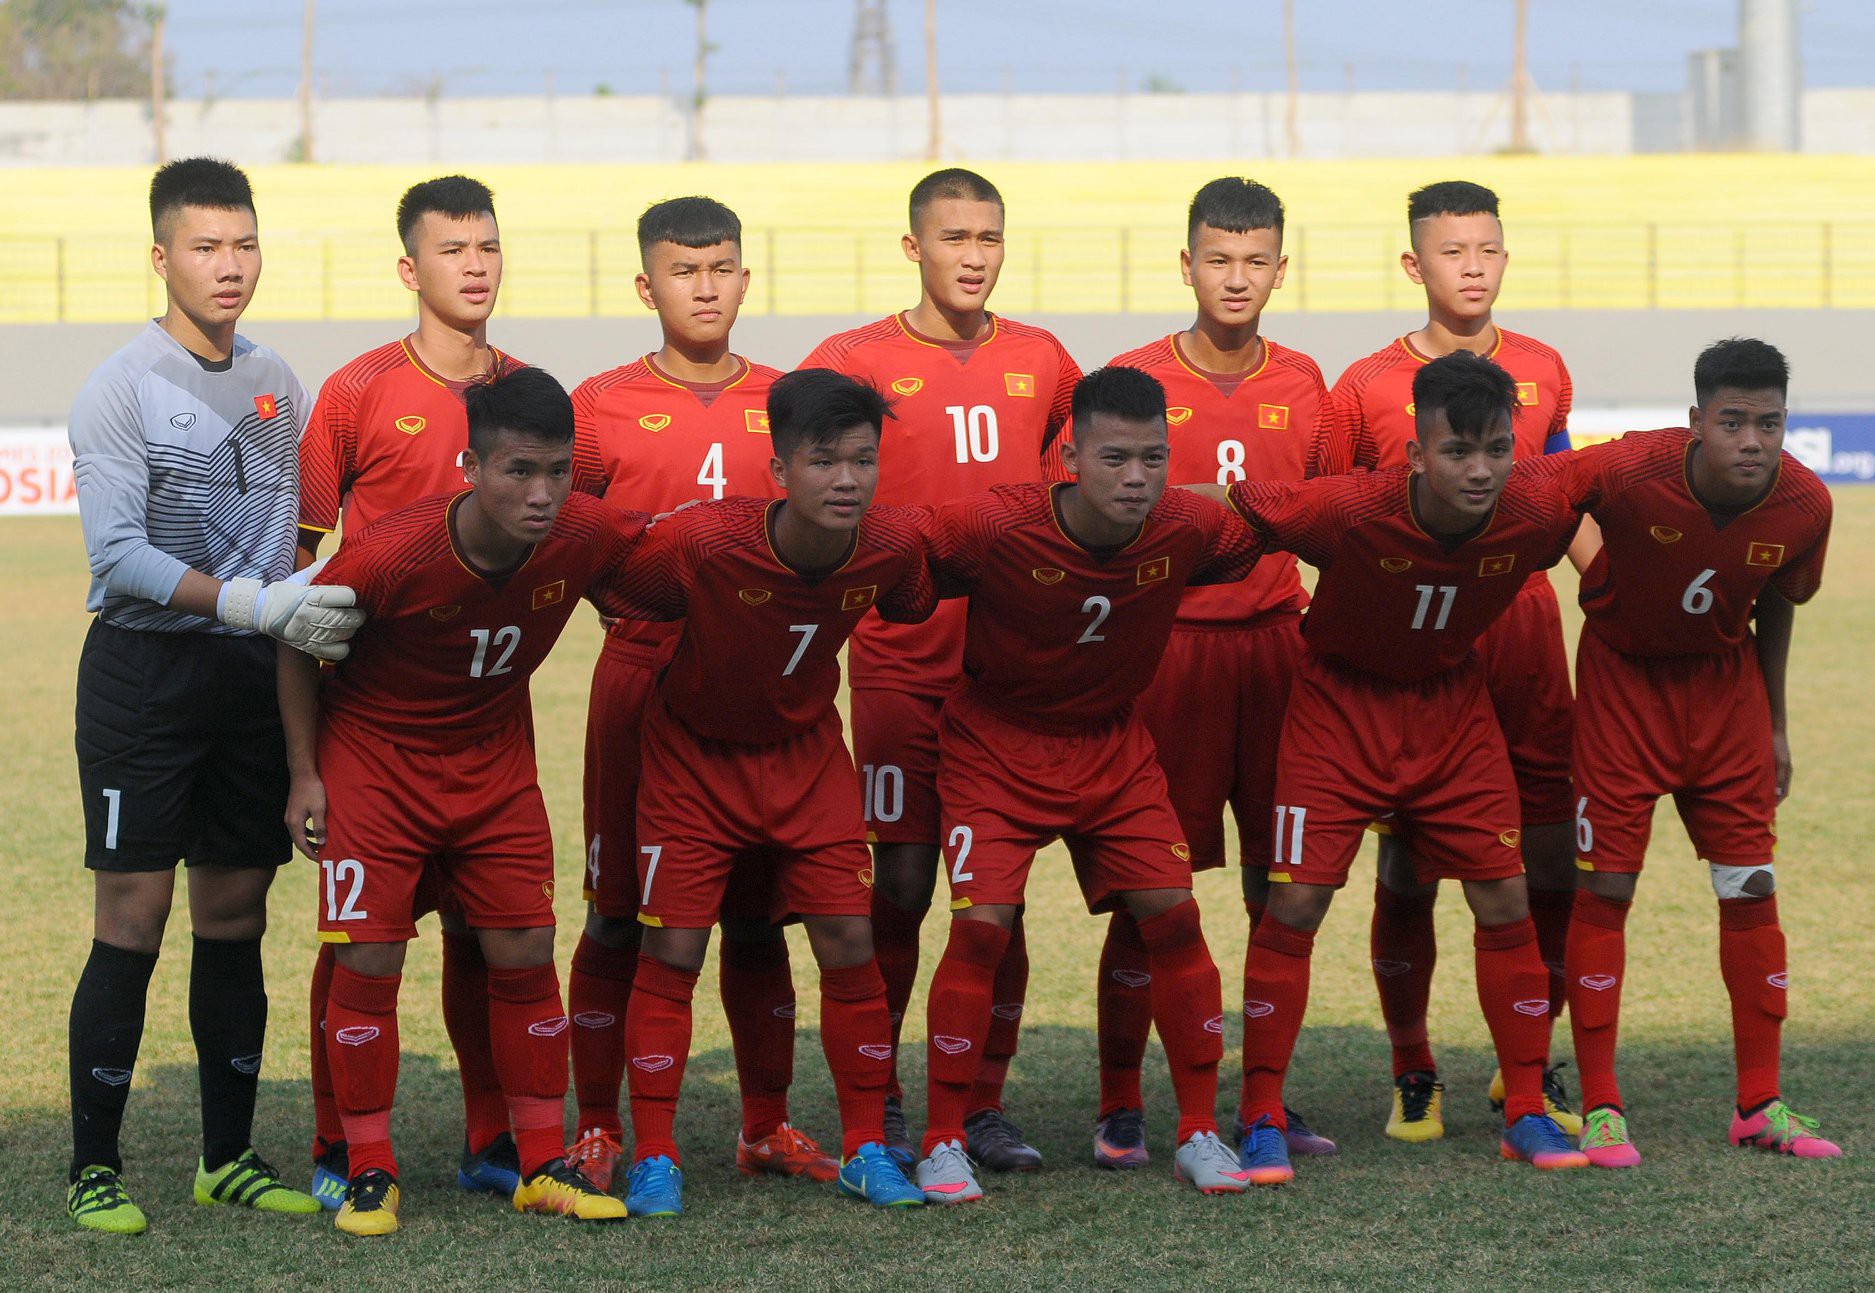 HLV Vũ Hồng Việt thừa nhận lối chơi của U16 Việt Nam chưa thuyết phục - Ảnh 3.